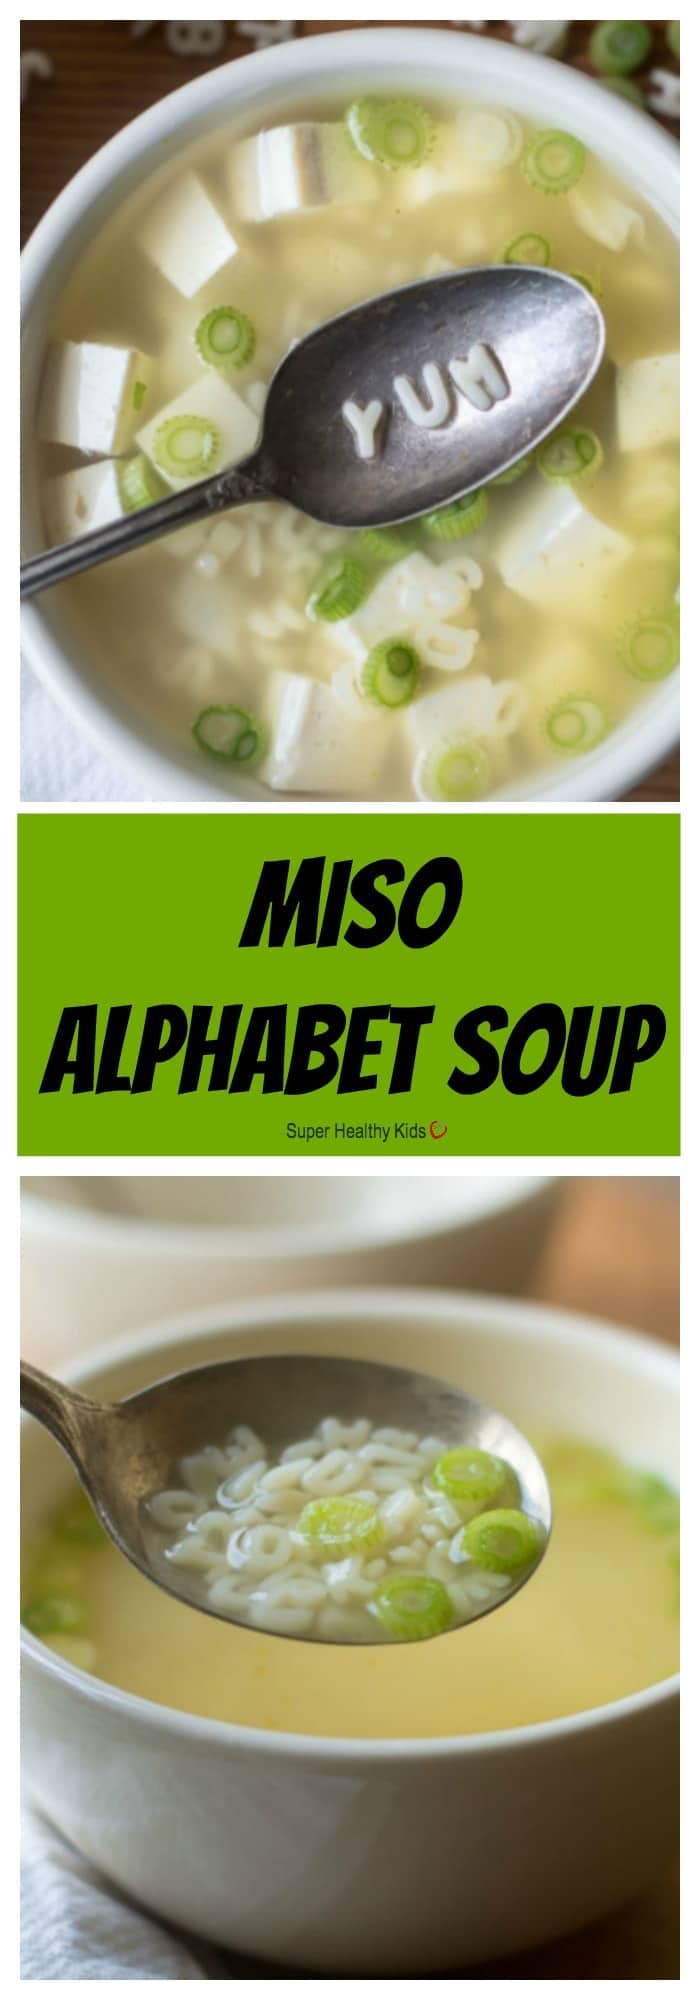 Miso Alphabet Soup - Super Healthy Kids